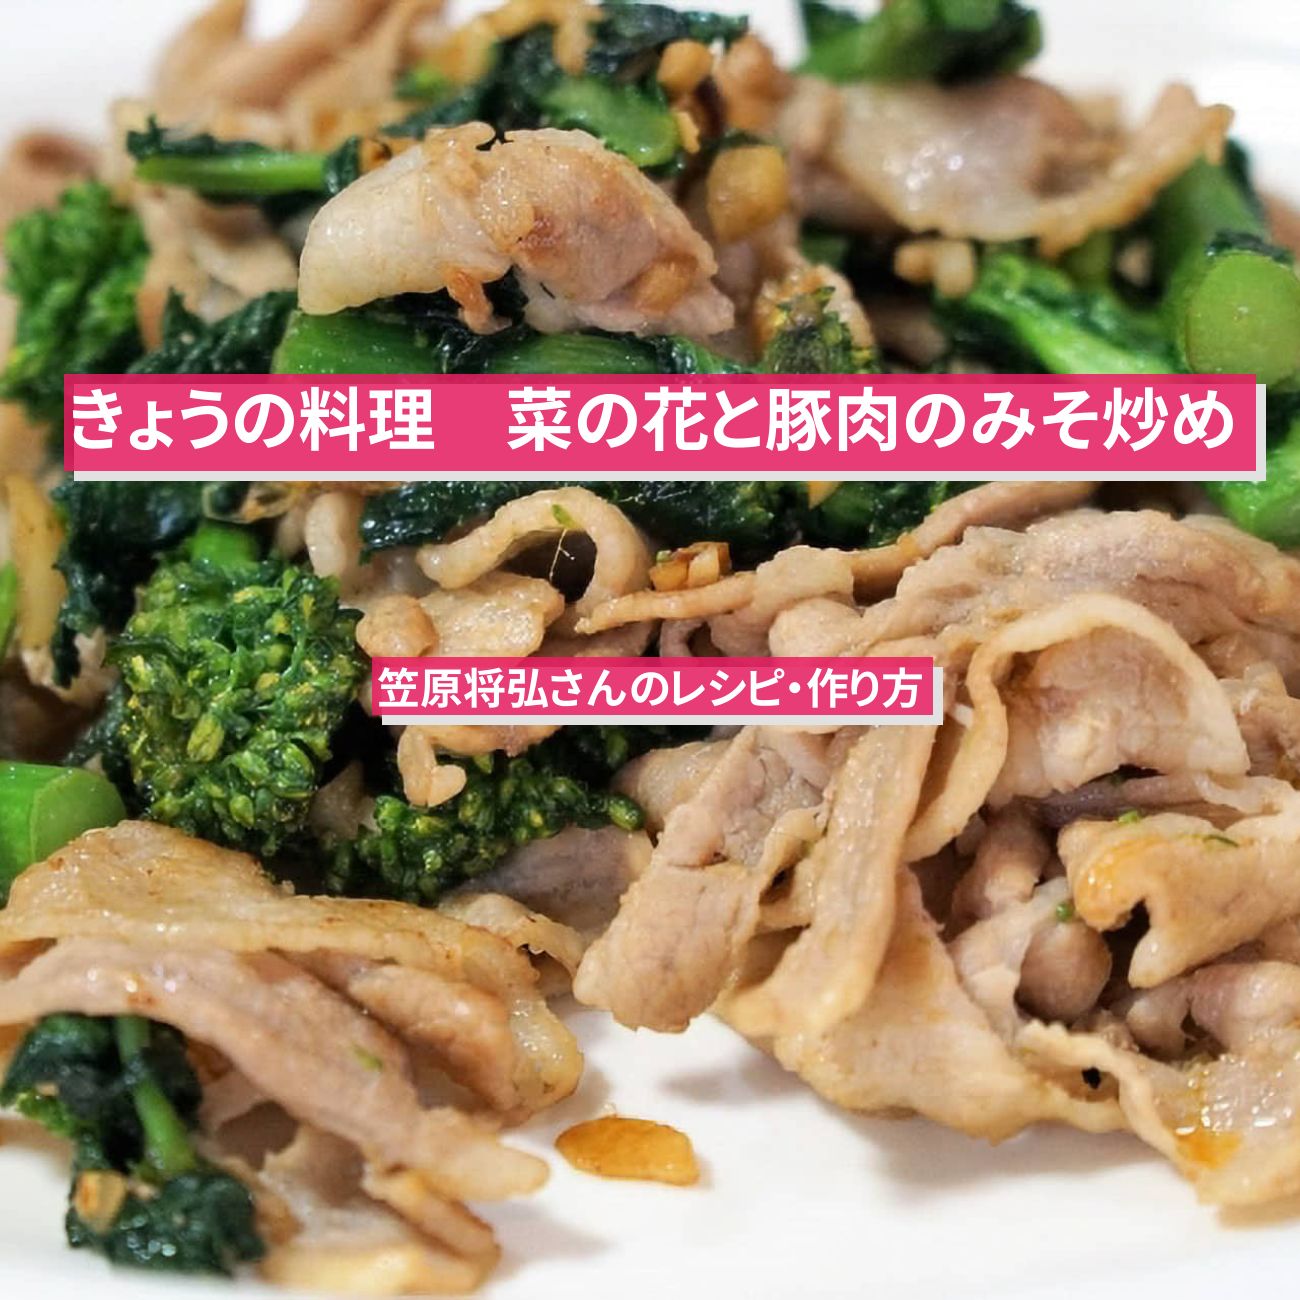 【きょうの料理】『菜の花と豚肉のみそ炒め』笠原将弘さんのレシピ・作り方